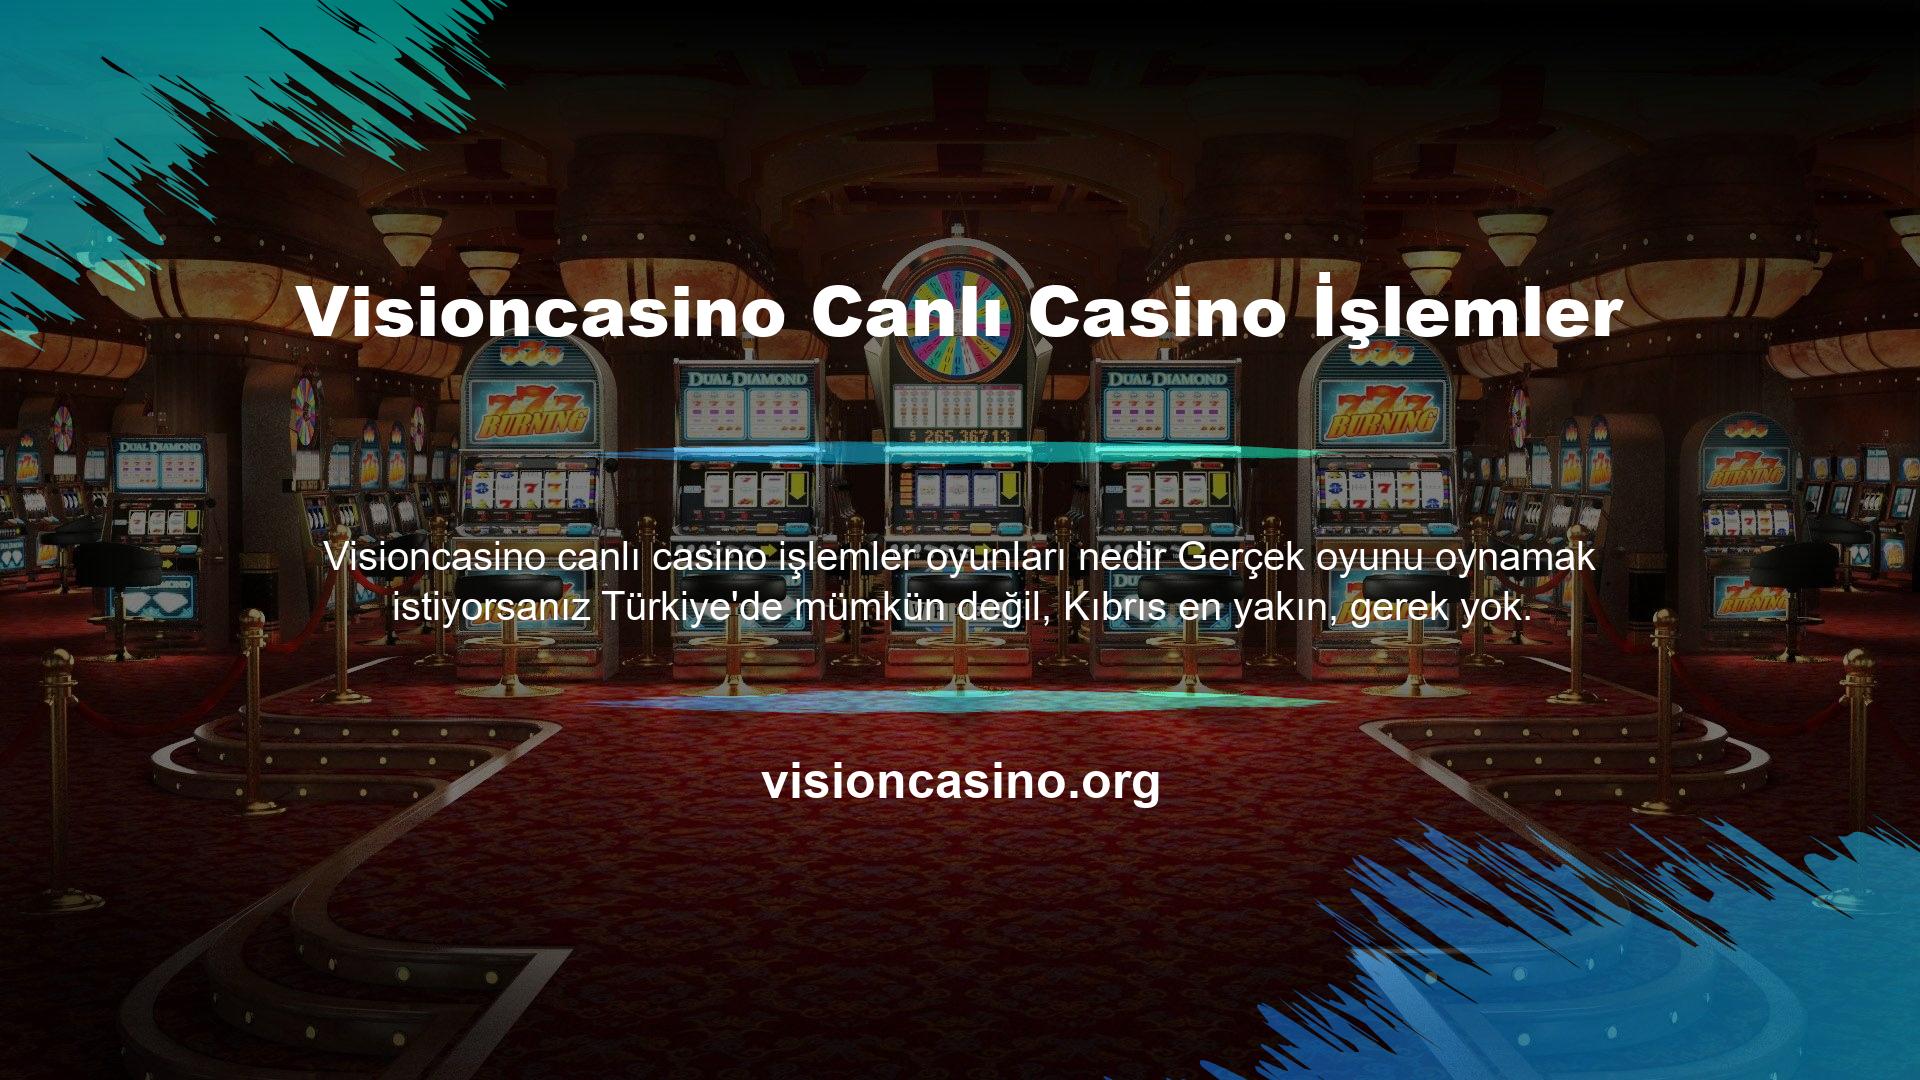 Online canlı casino hizmetleri sitenin 5